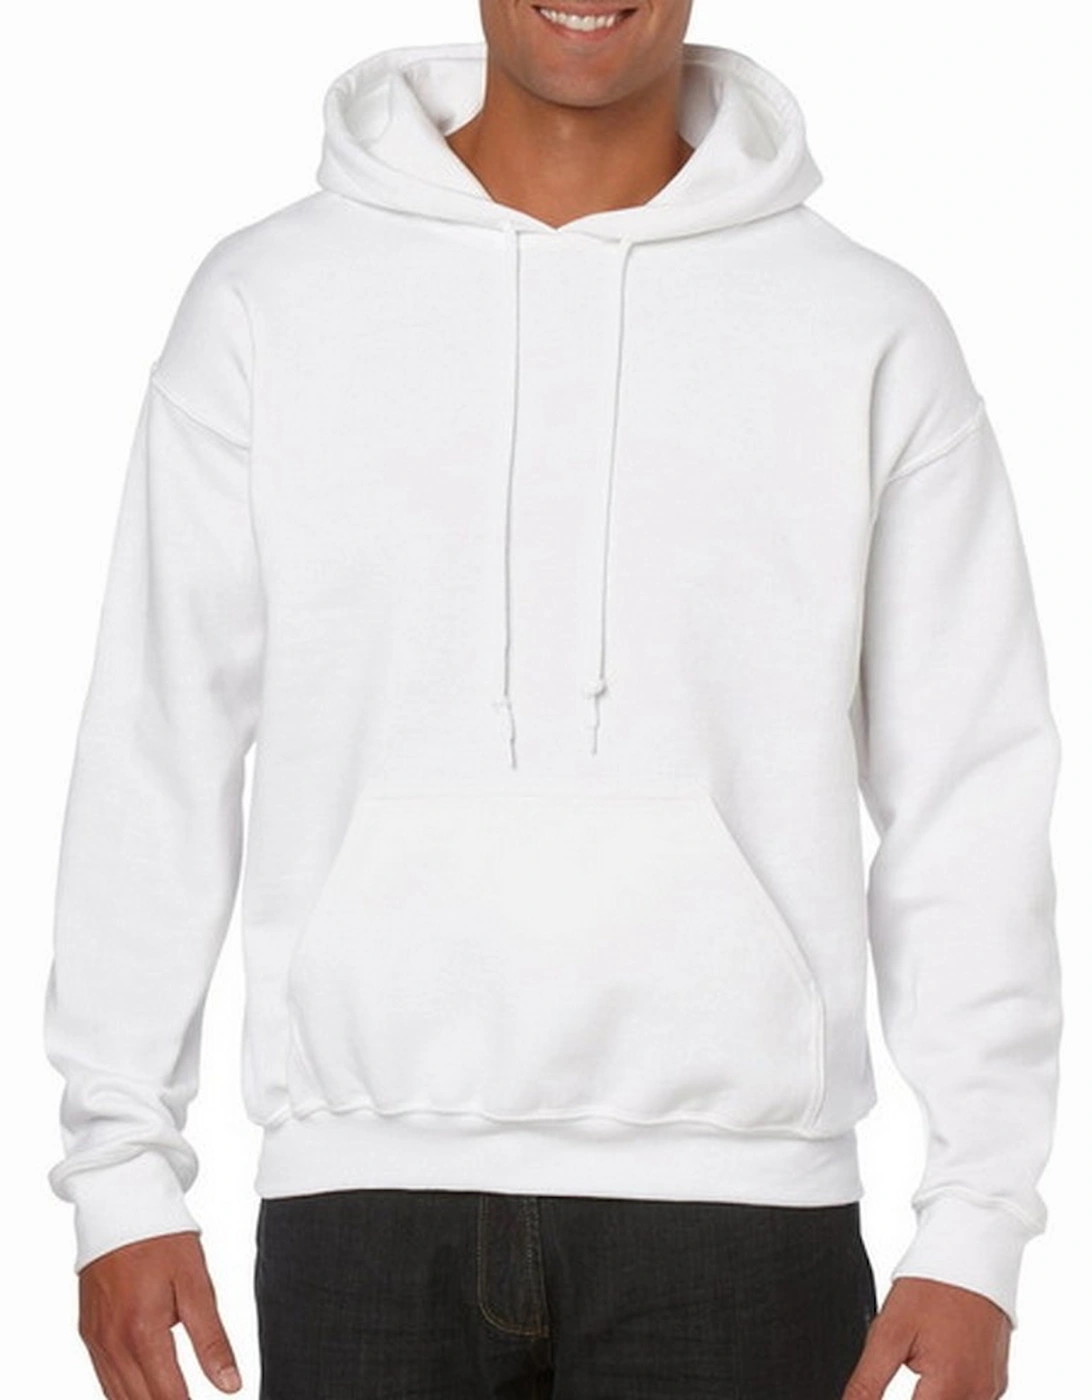 Heavy Blend Adult Unisex Hooded Sweatshirt / Hoodie